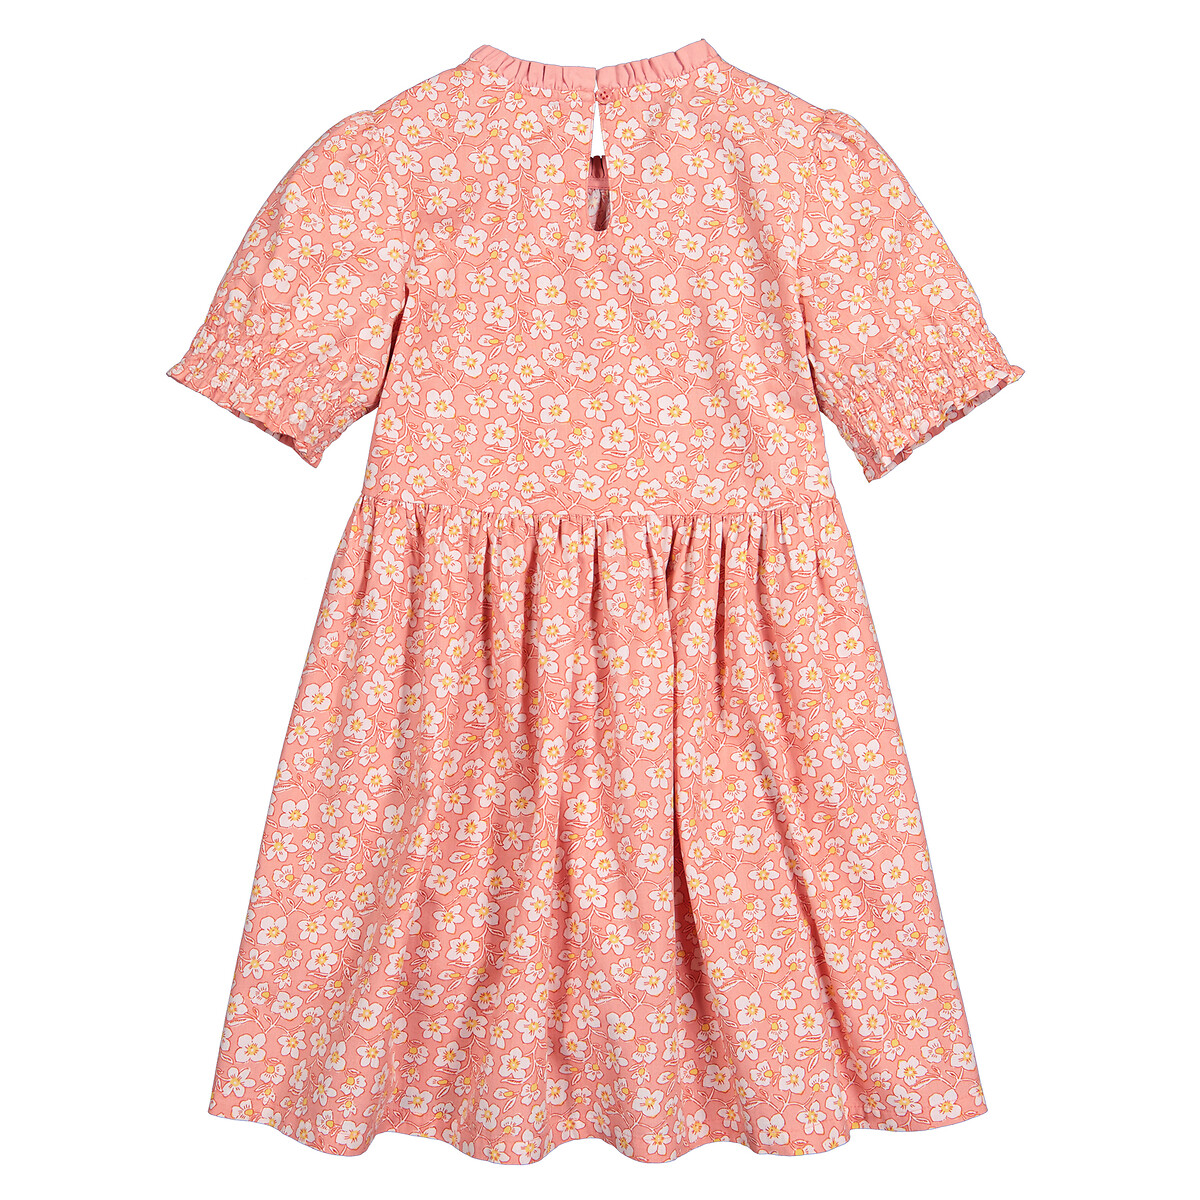 Платье С короткими рукавами и принтом цветы 12 лет -150 см розовый LaRedoute, размер 12 лет -150 см - фото 4